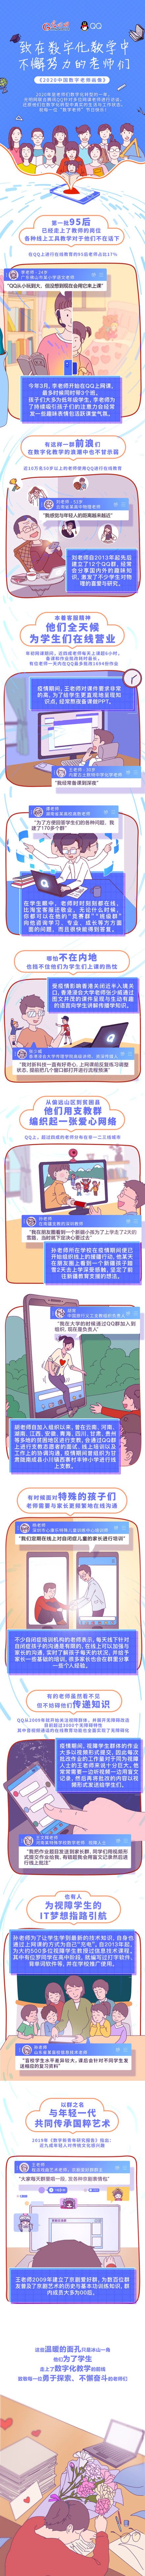 光明网联合腾讯QQ推出《2020中国数字教师画像》